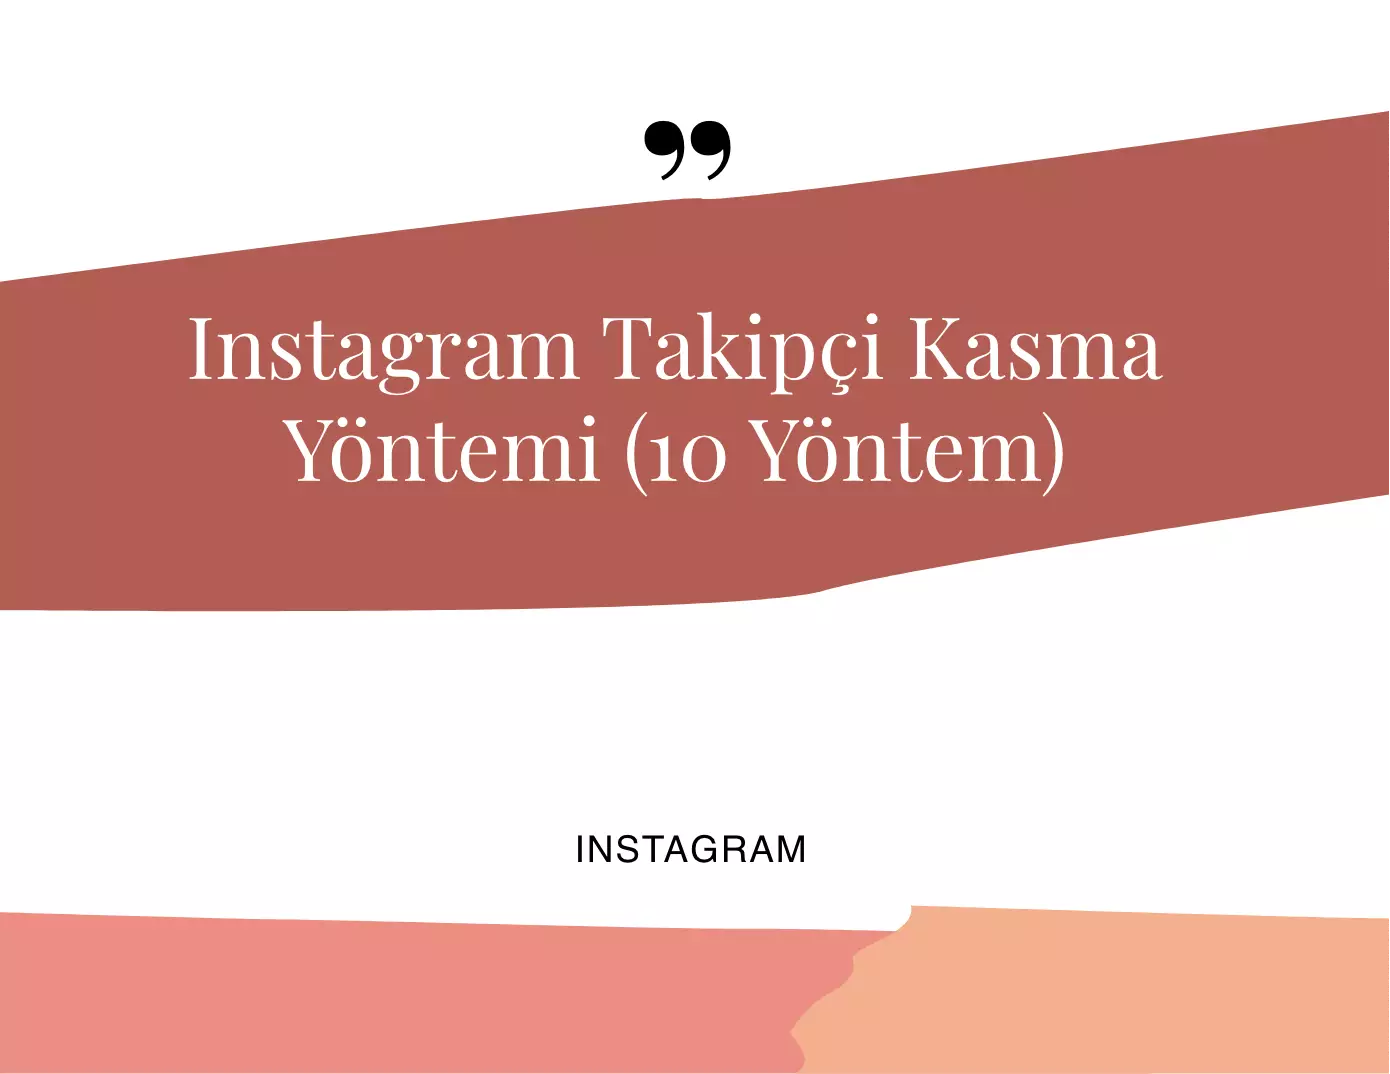 Instagram Takipçi Kasma Yöntemi (10 Yöntem)